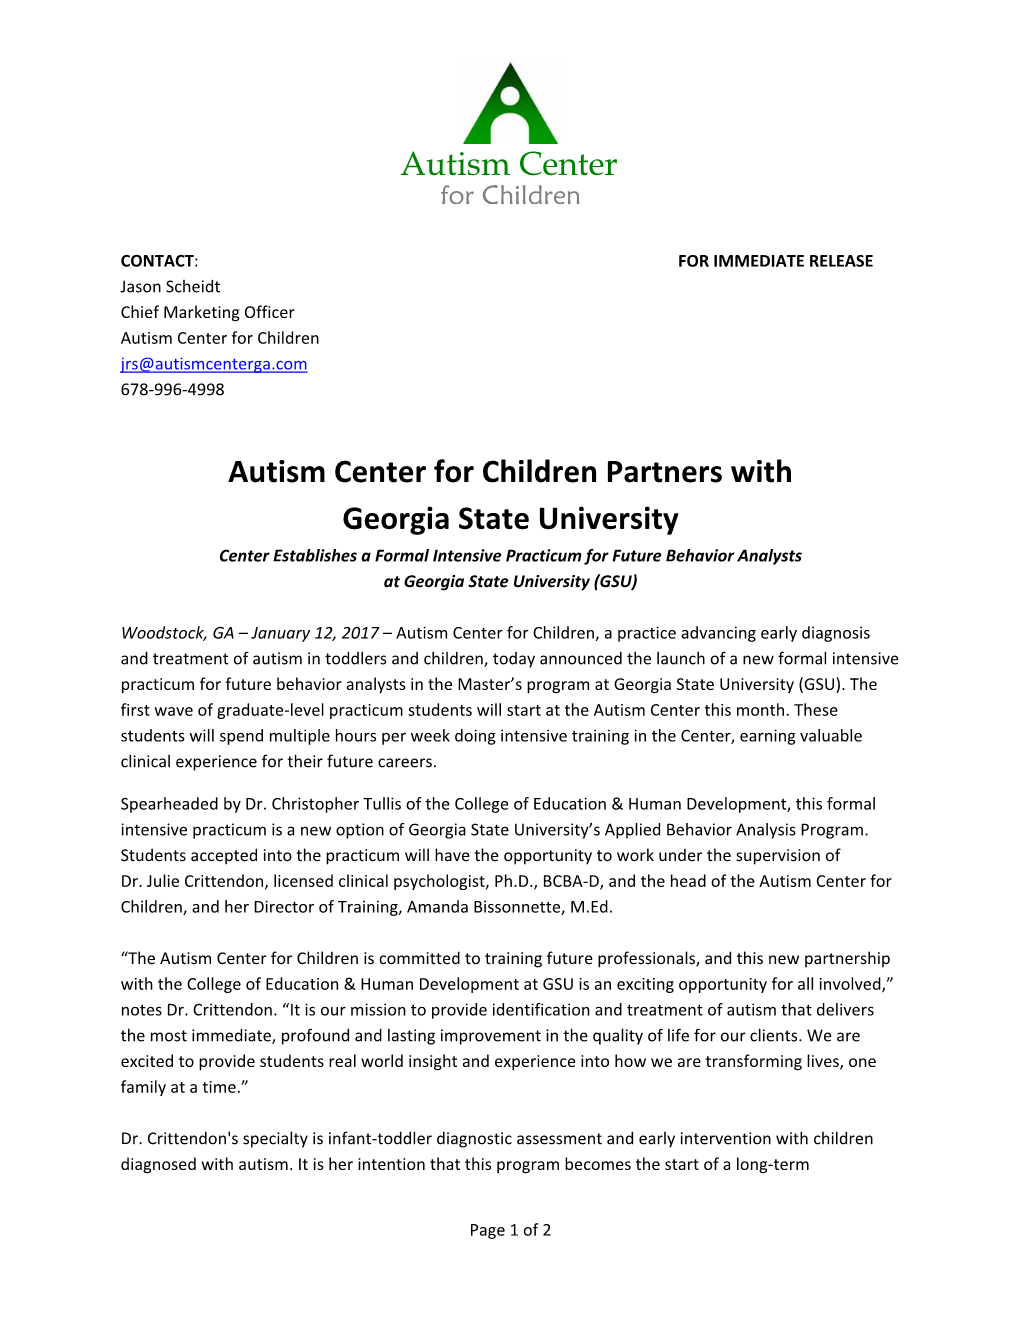 Autism Center for Children